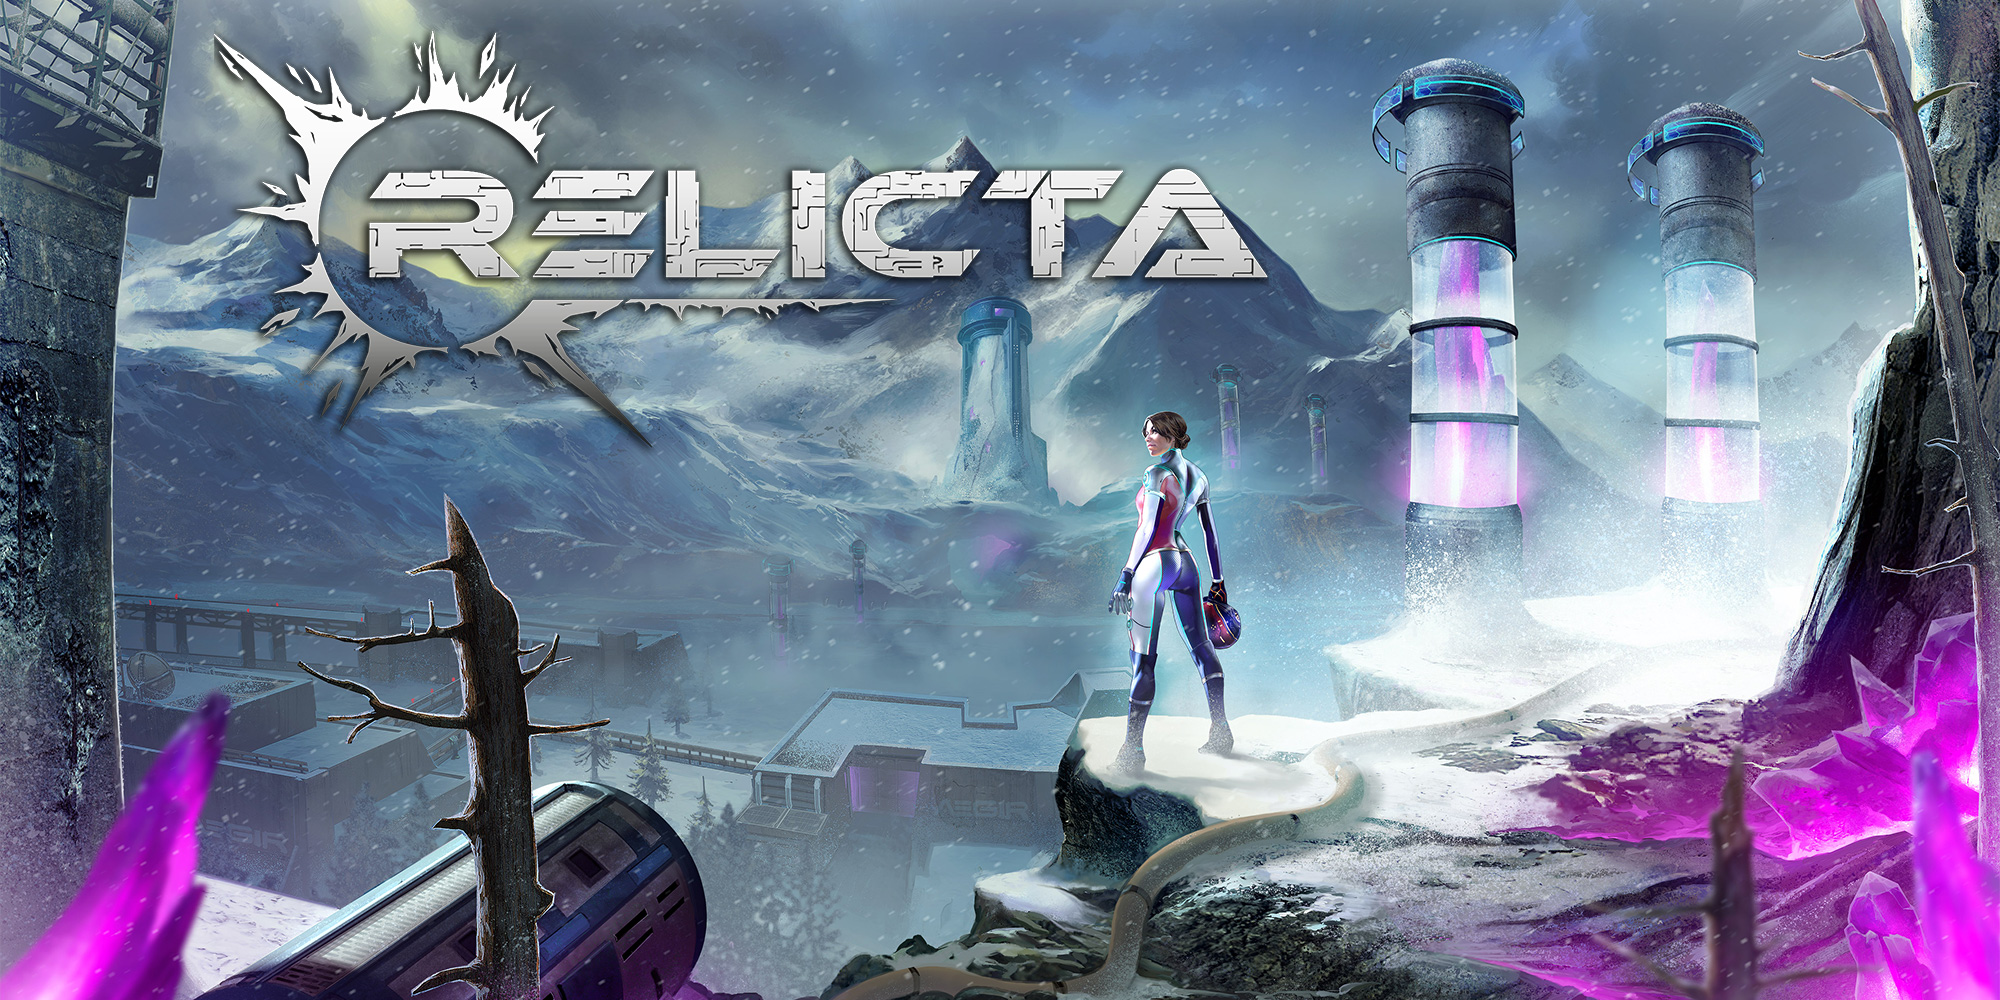 Relicta ora Gratis su Epic Games Store!